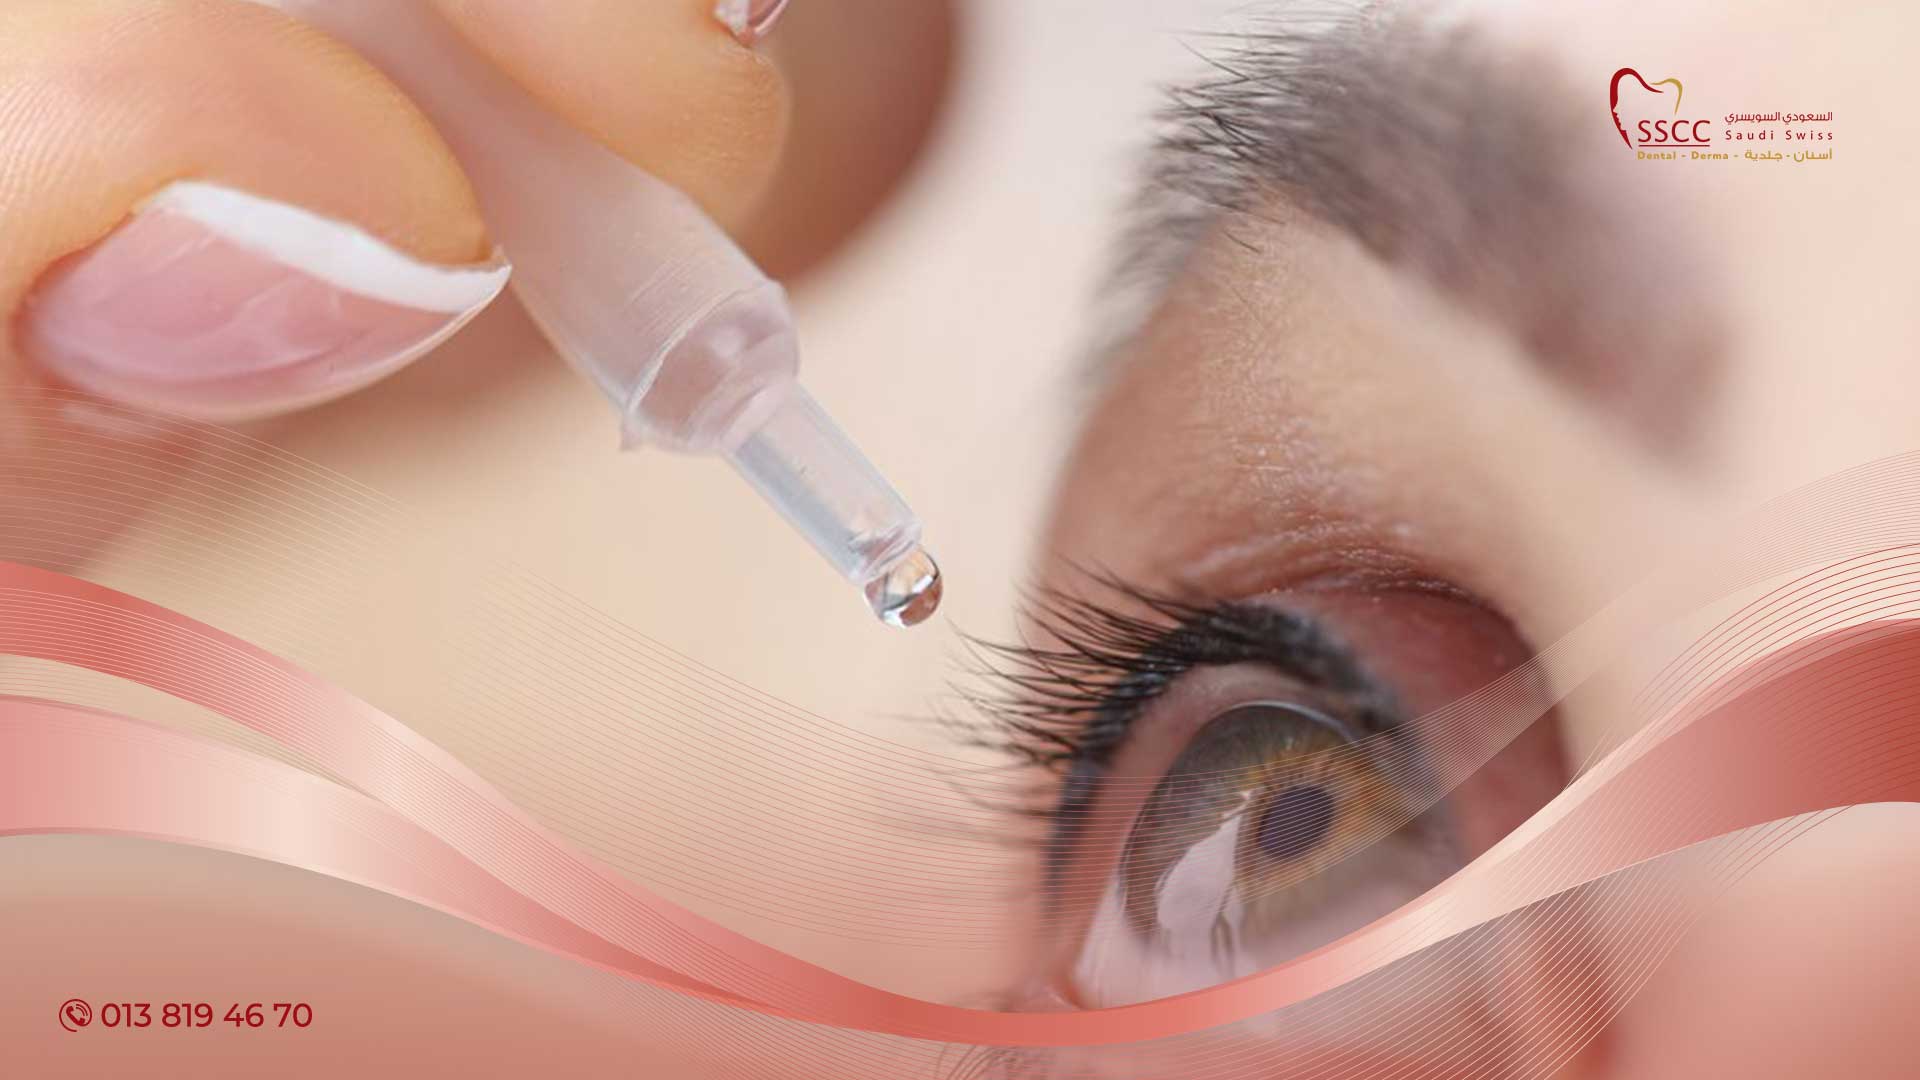 علاجات منزلية للعين